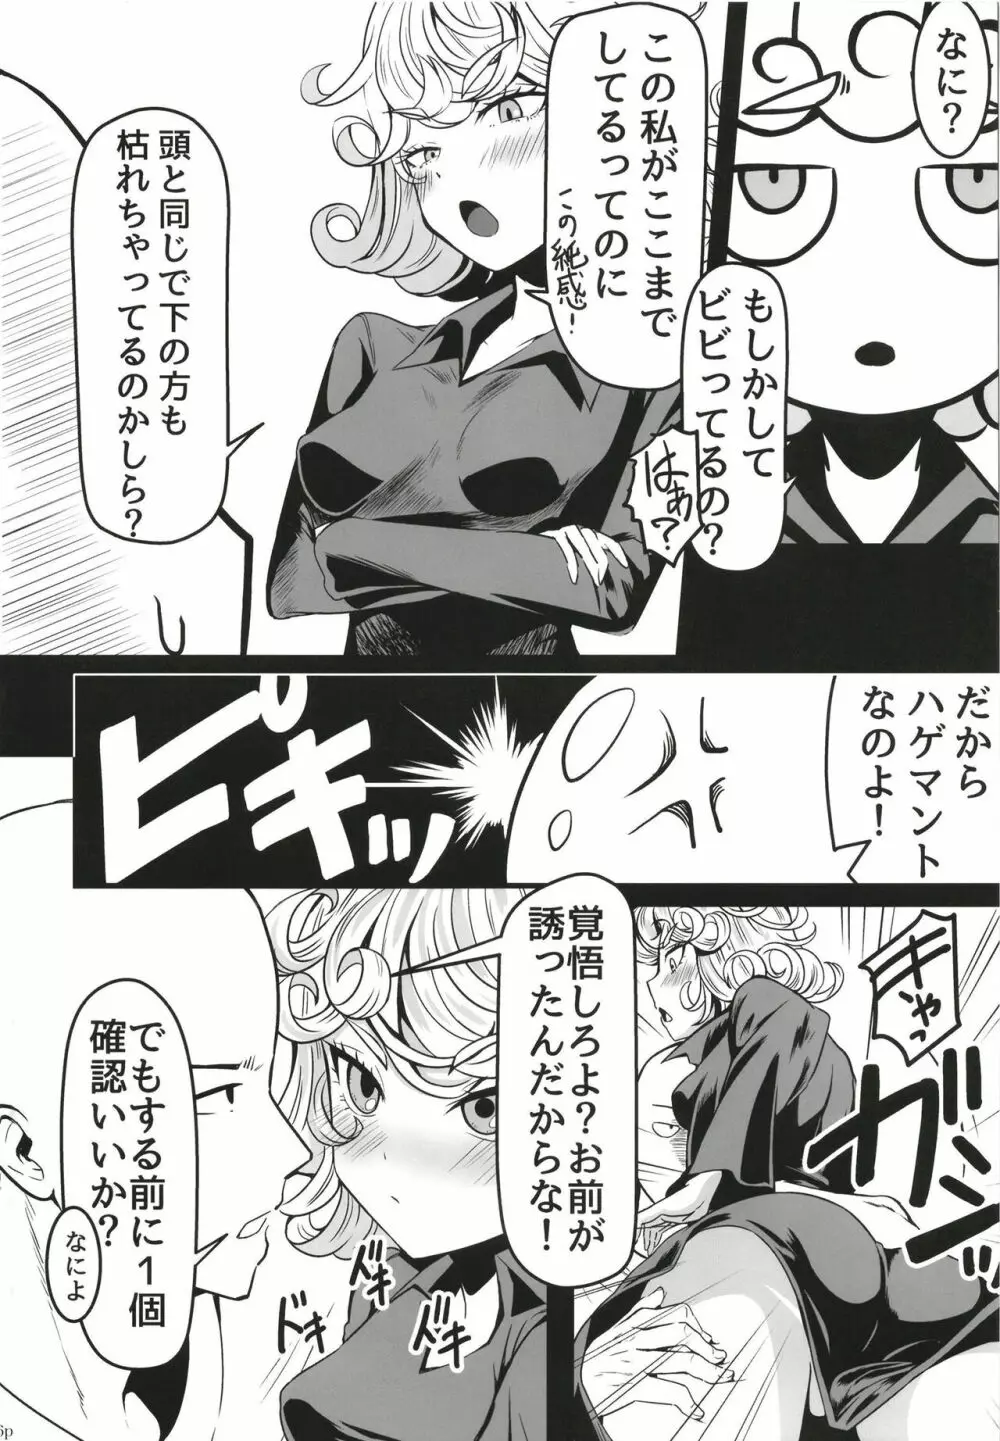 でこぼこLove sister 5撃目 - page16